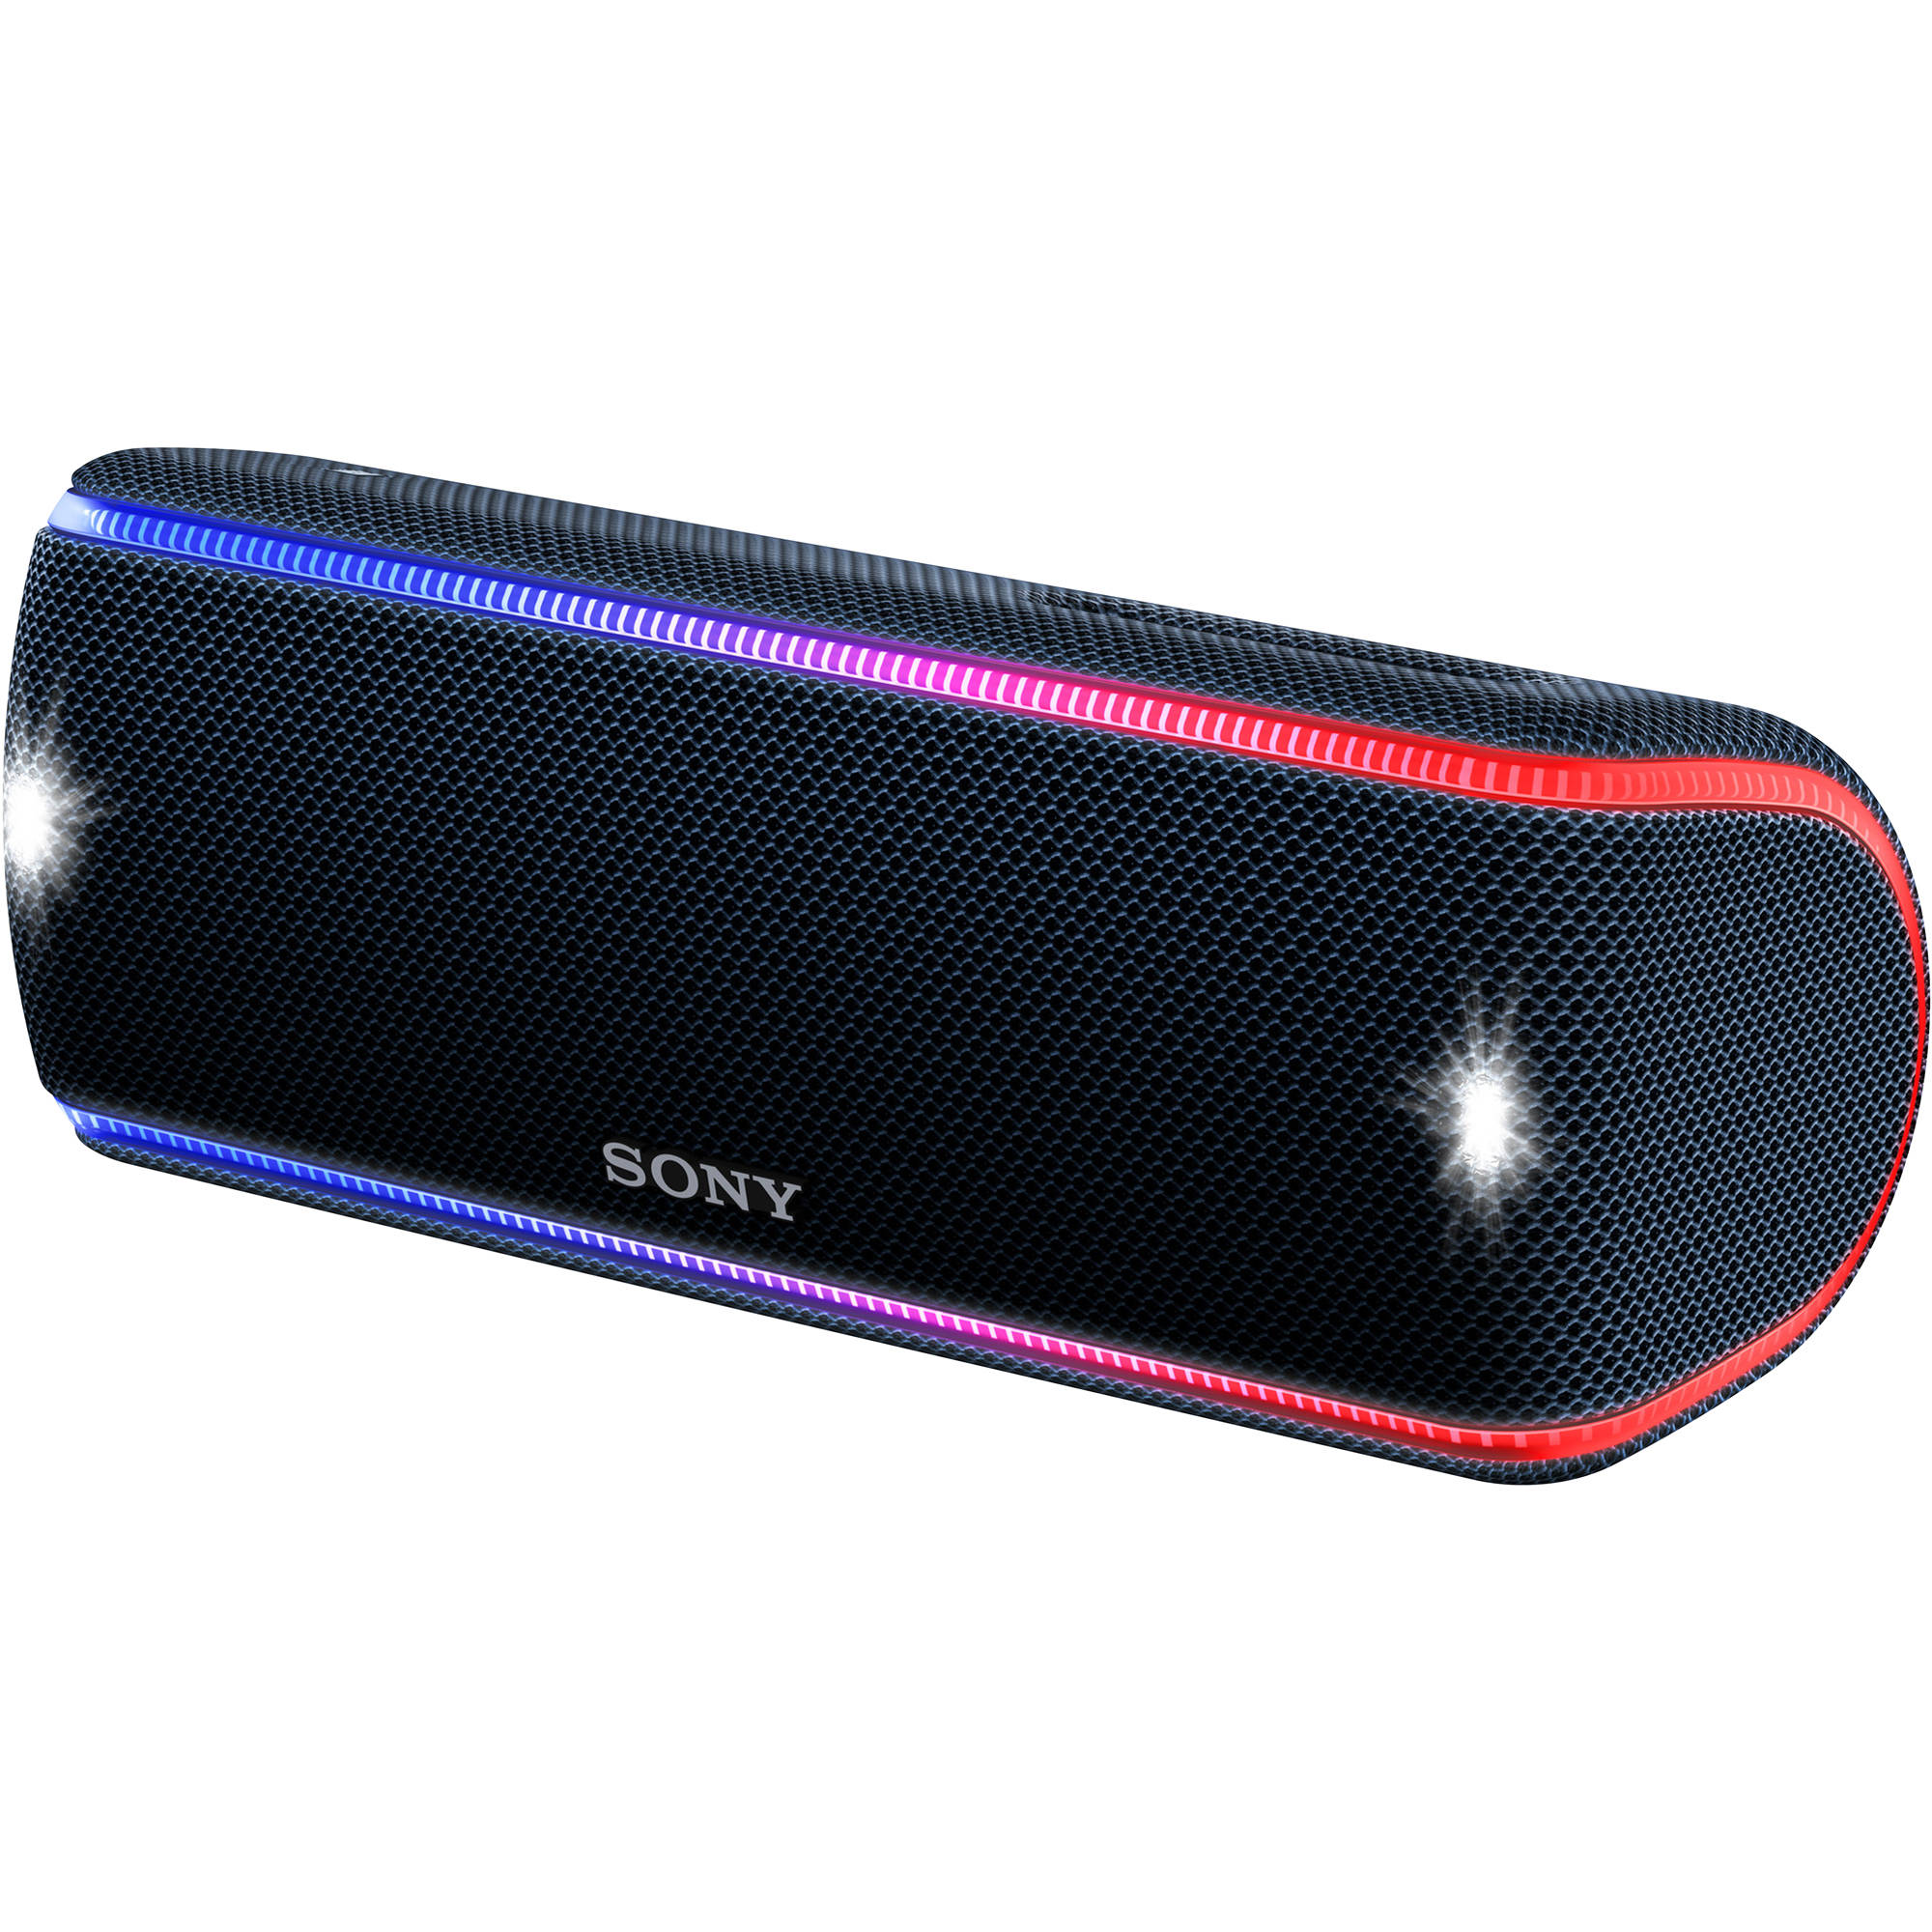 Sony SRS-XB31 Portable Wireless 